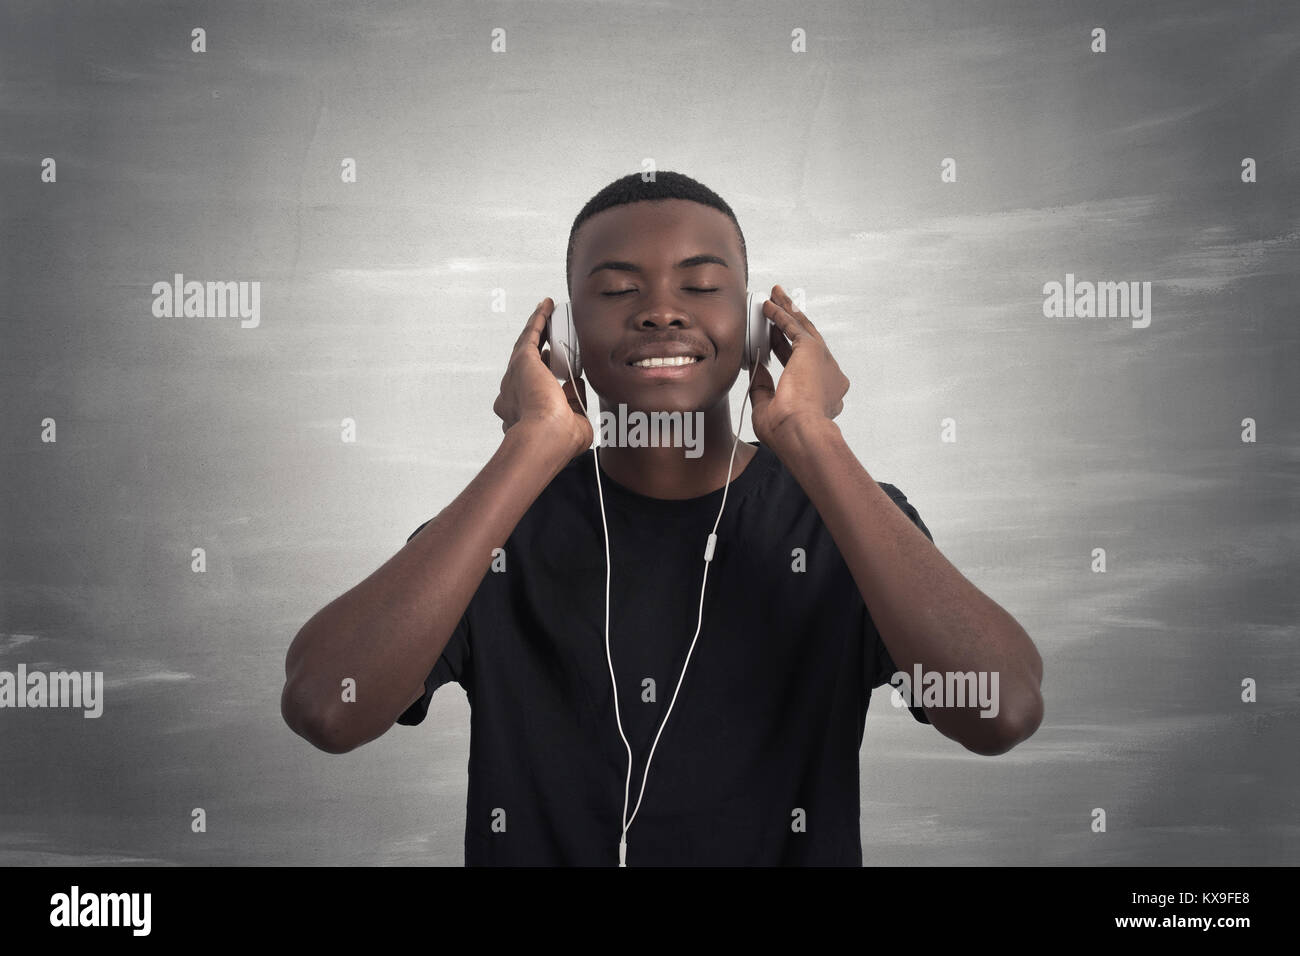 Happy afrikanischer Mann lächelnd das Hören von Musik über Kopfhörer. Grauer Hintergrund. Stockfoto